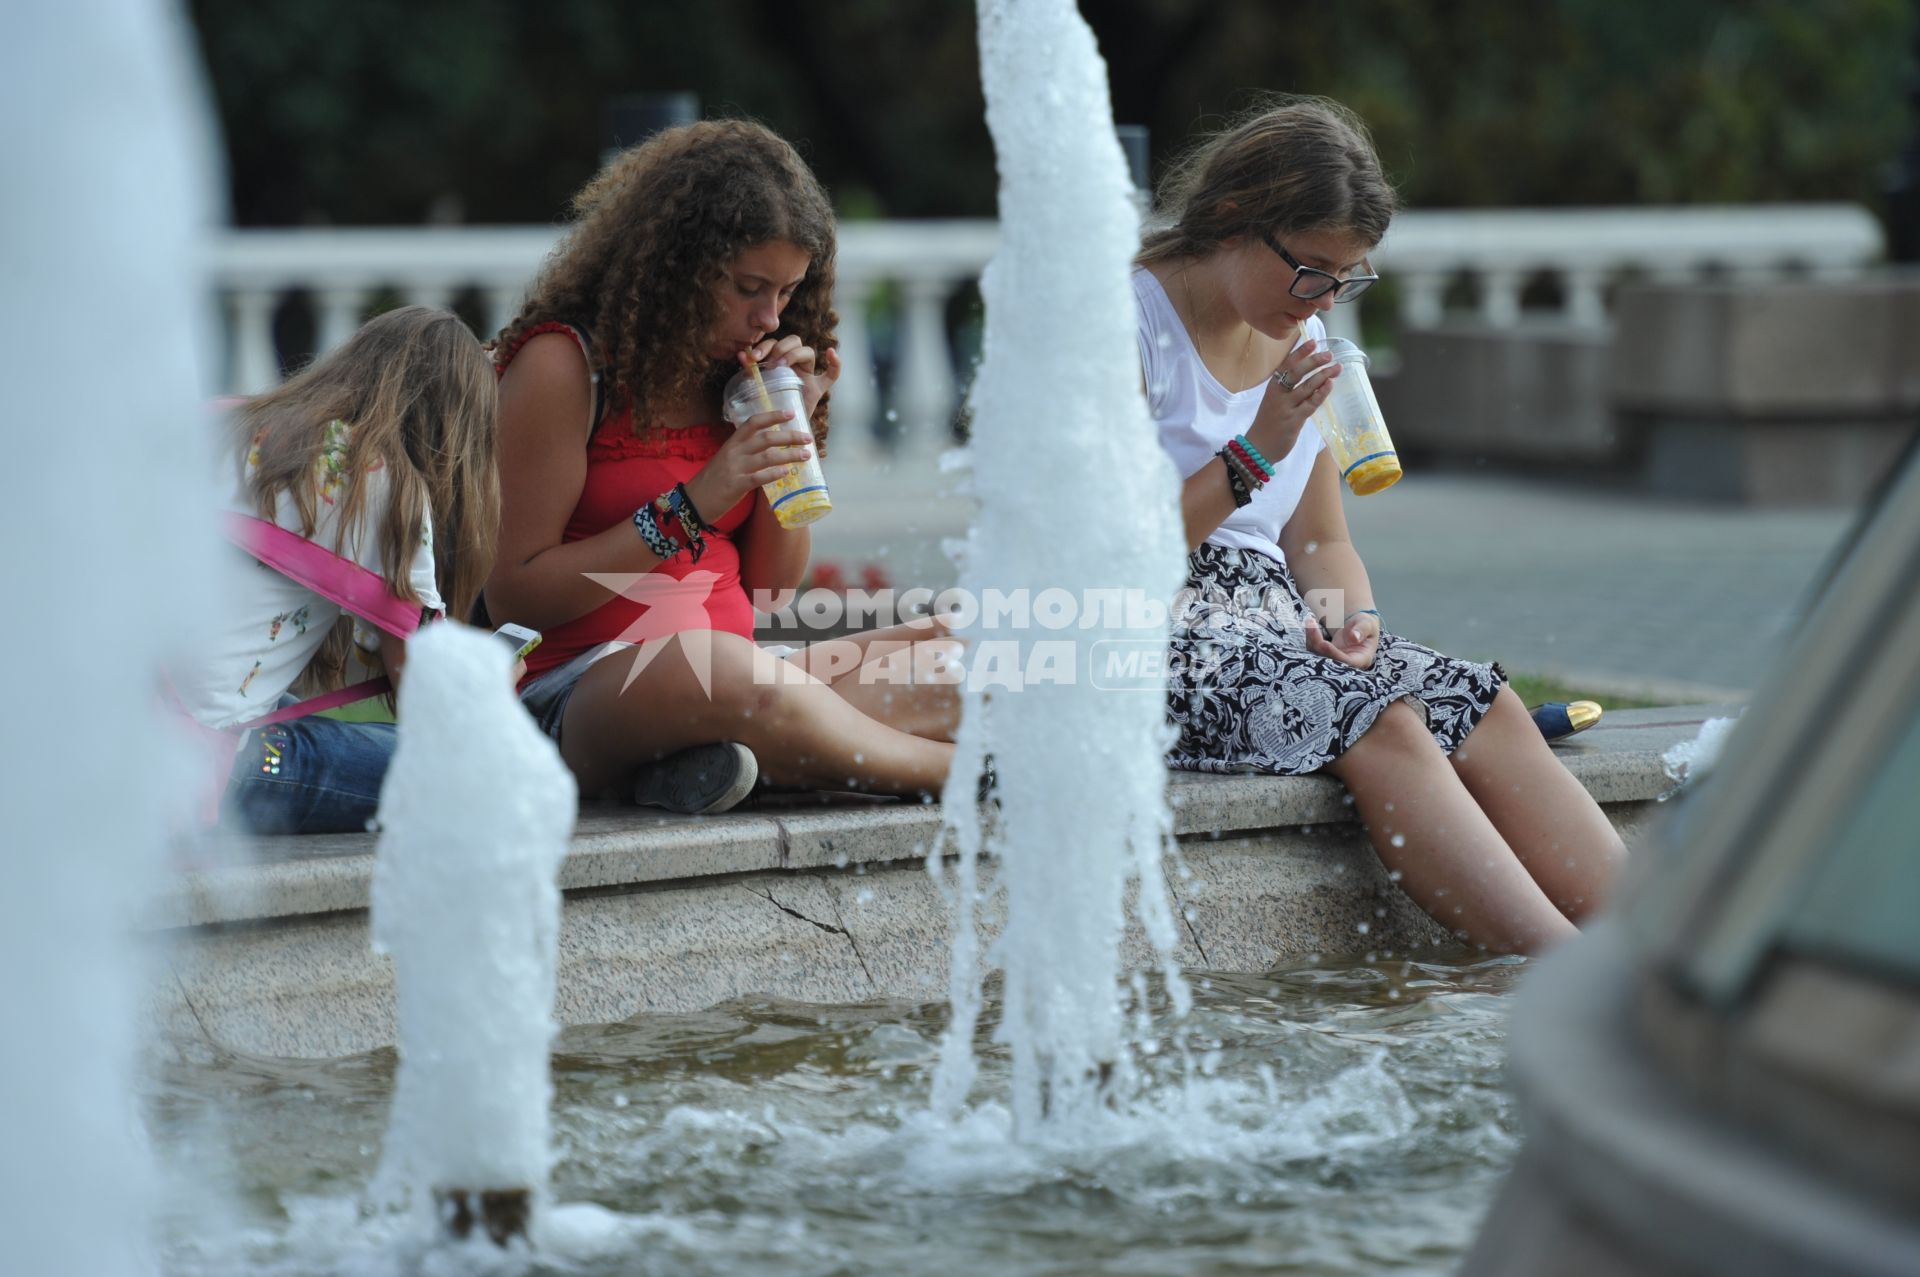 Манежная площадь. На снимке: девушки сидят у фонтана и пьют сок.